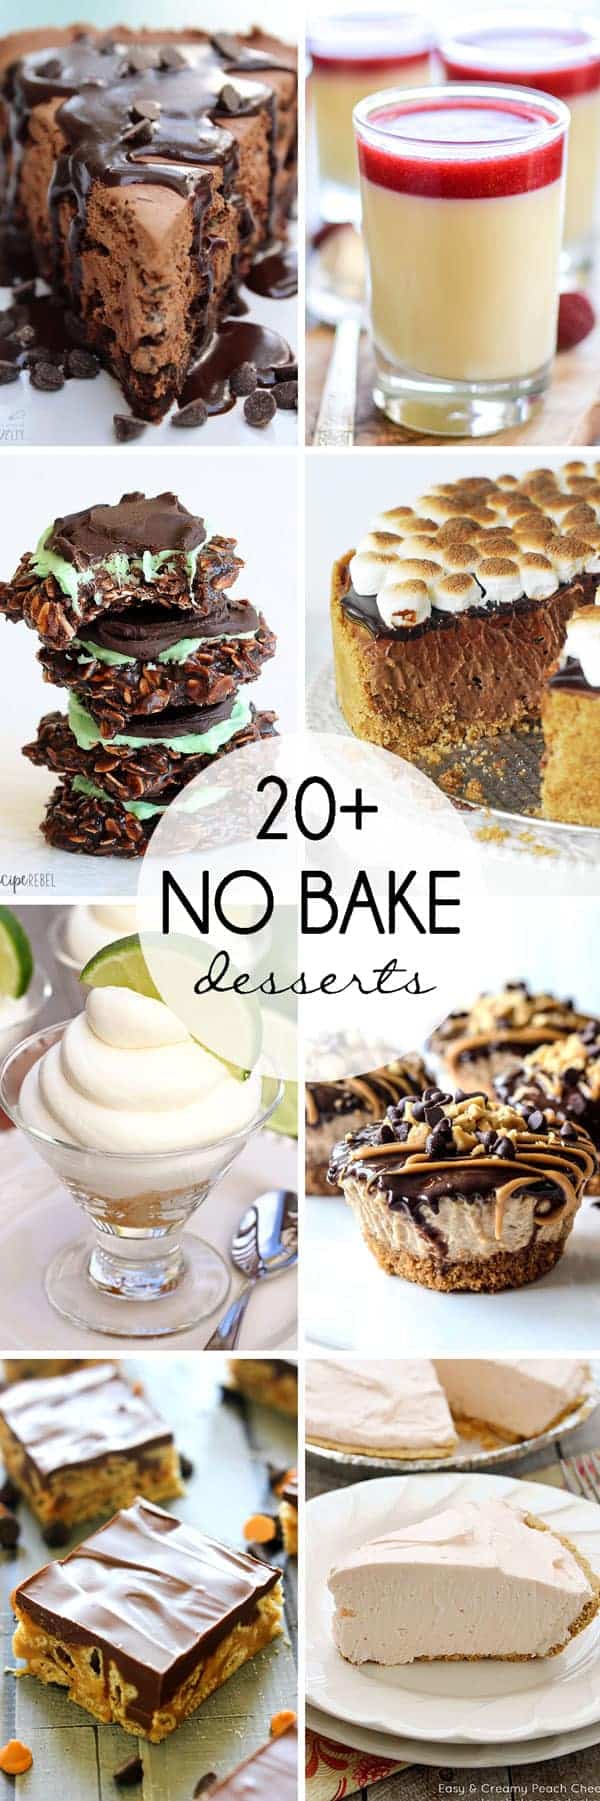 20+ no bake desserts for summer!